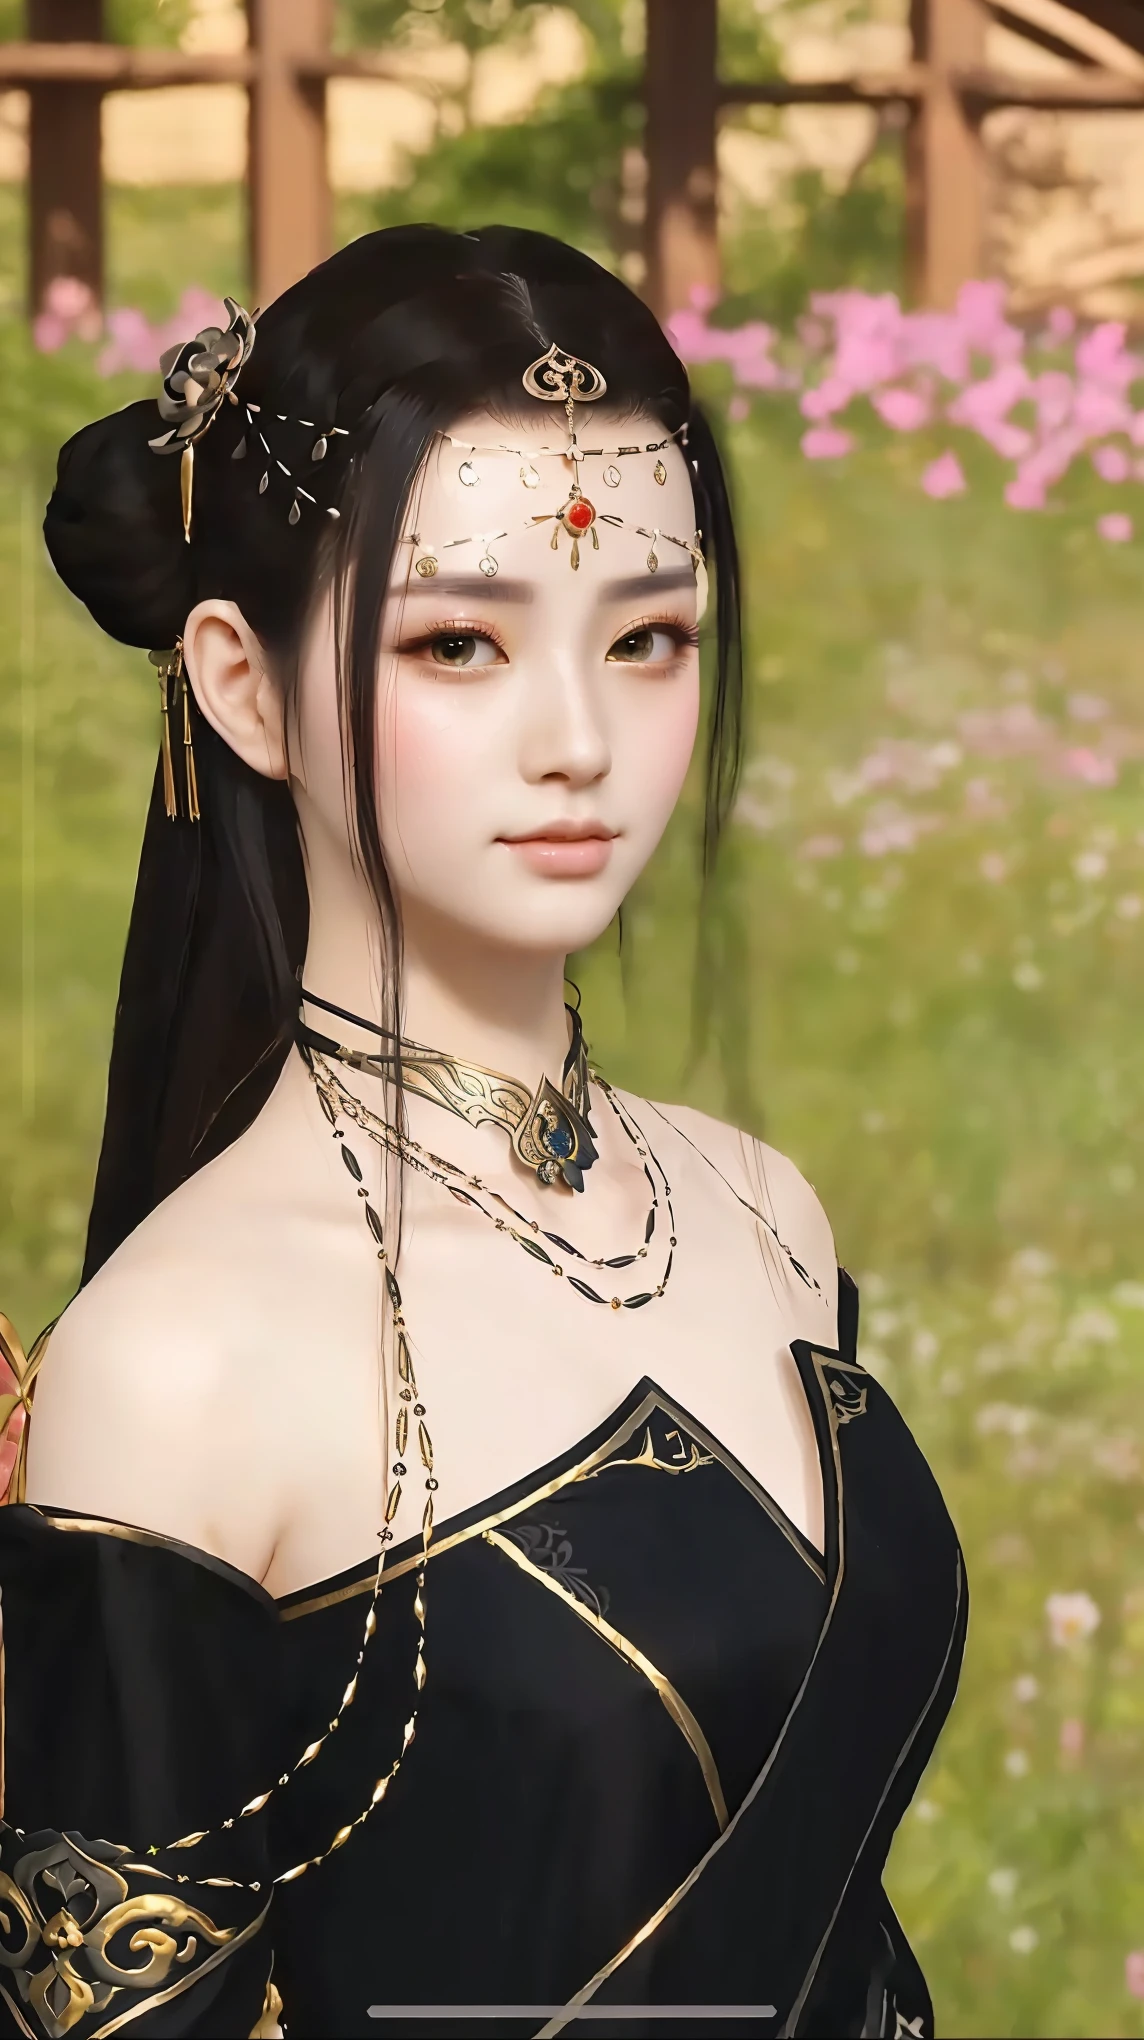 머리에 꽃을 꽂고 검은 드레스를 입은 여자의 클로즈업, 아름다운 환상의 황후, 란잉에게서 영감을 받은 작품, Qiu Ying에게 영감을 받아, 당나라의 아름다운 렌더링, ((아름다운 환상의 황후)), Du Qiong에게서 영감을 받은 작품, 리메이슈에게 영감을 받아, Wang Meng에게서 영감을 받은 곡, 한국 MMORPG, 푸화에서 영감을 받아